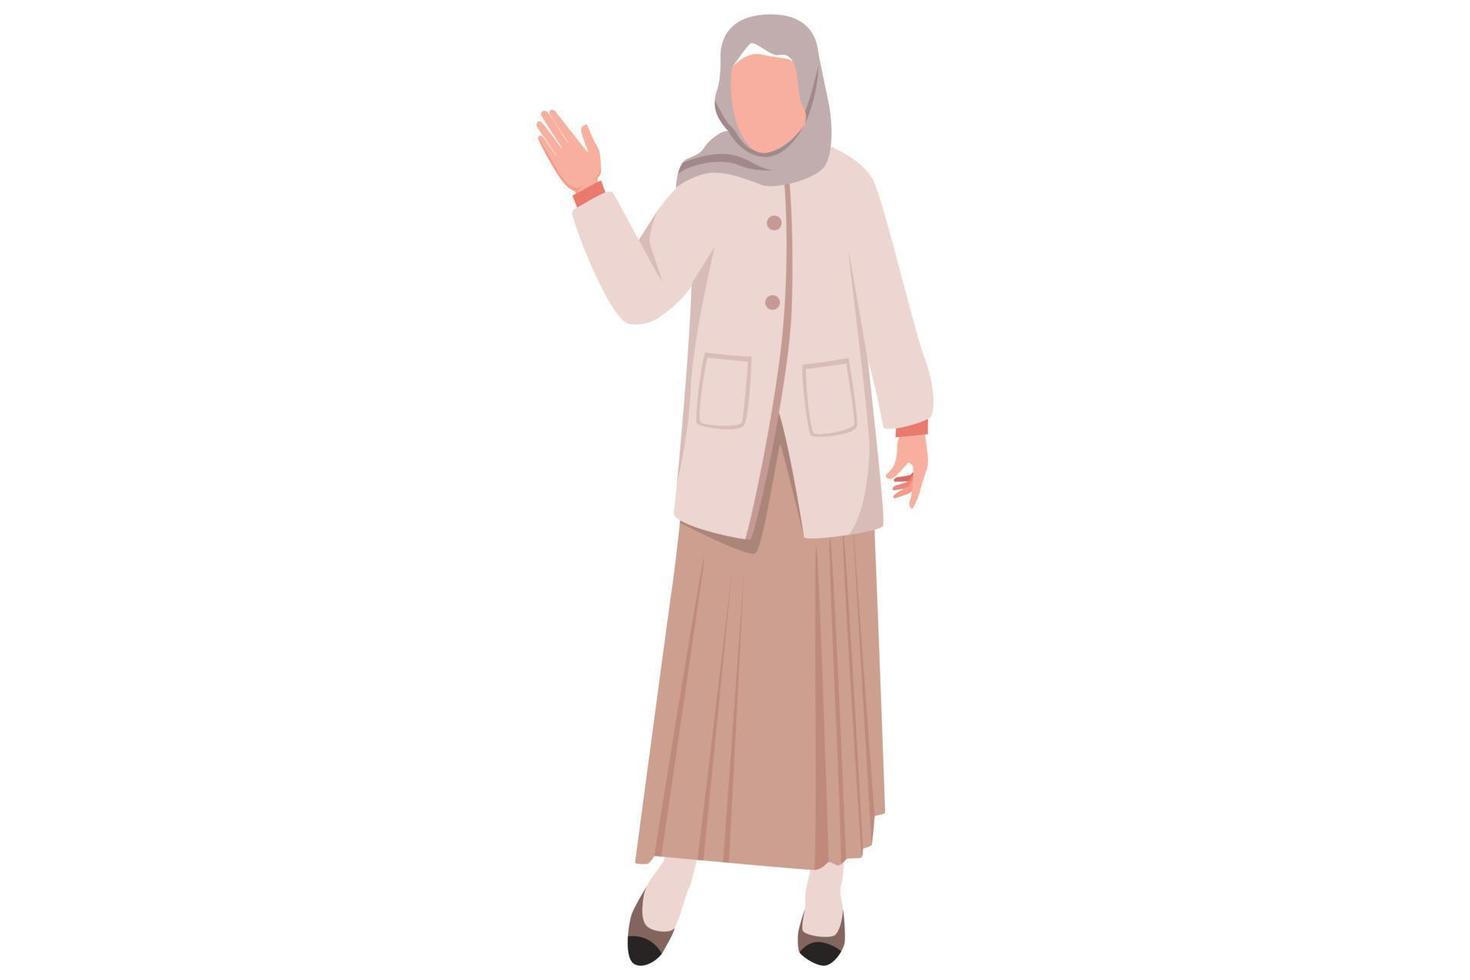 business flat cartoon style zeichnung arabische geschäftsfrau stehend und etwas mit stopphandgeste ablehnend. Strenger Chef, der mit der Handfläche ein Stop-Gesten-Schild zeigt. Grafikdesign-Vektorillustration vektor